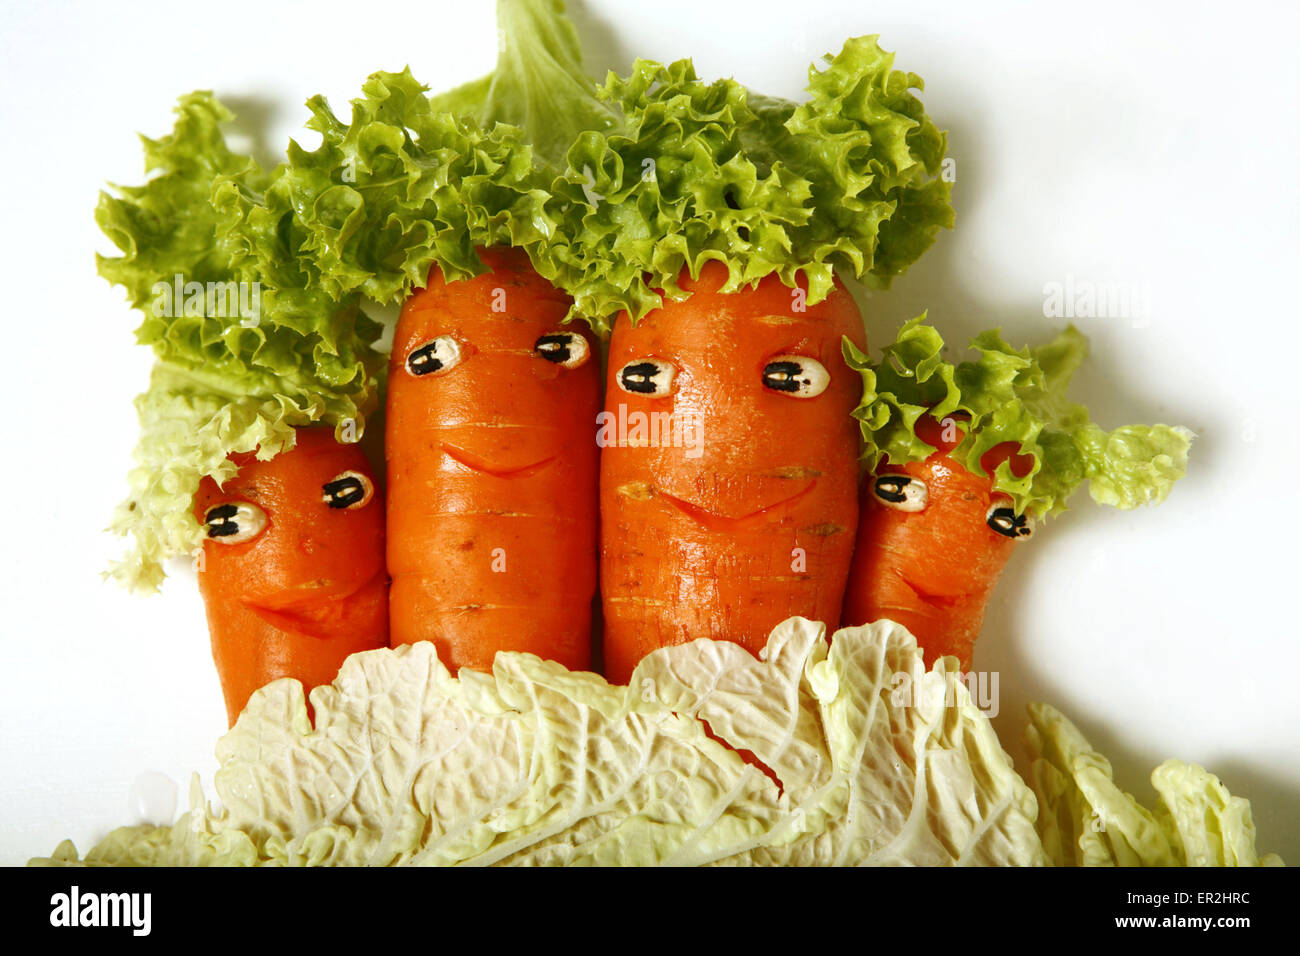 Symbol, Gemuese, Gesicht, Gesichter, Froehlich, Vitamine, Gesund, Grinsen, Moehren, Karotten Stock Photo